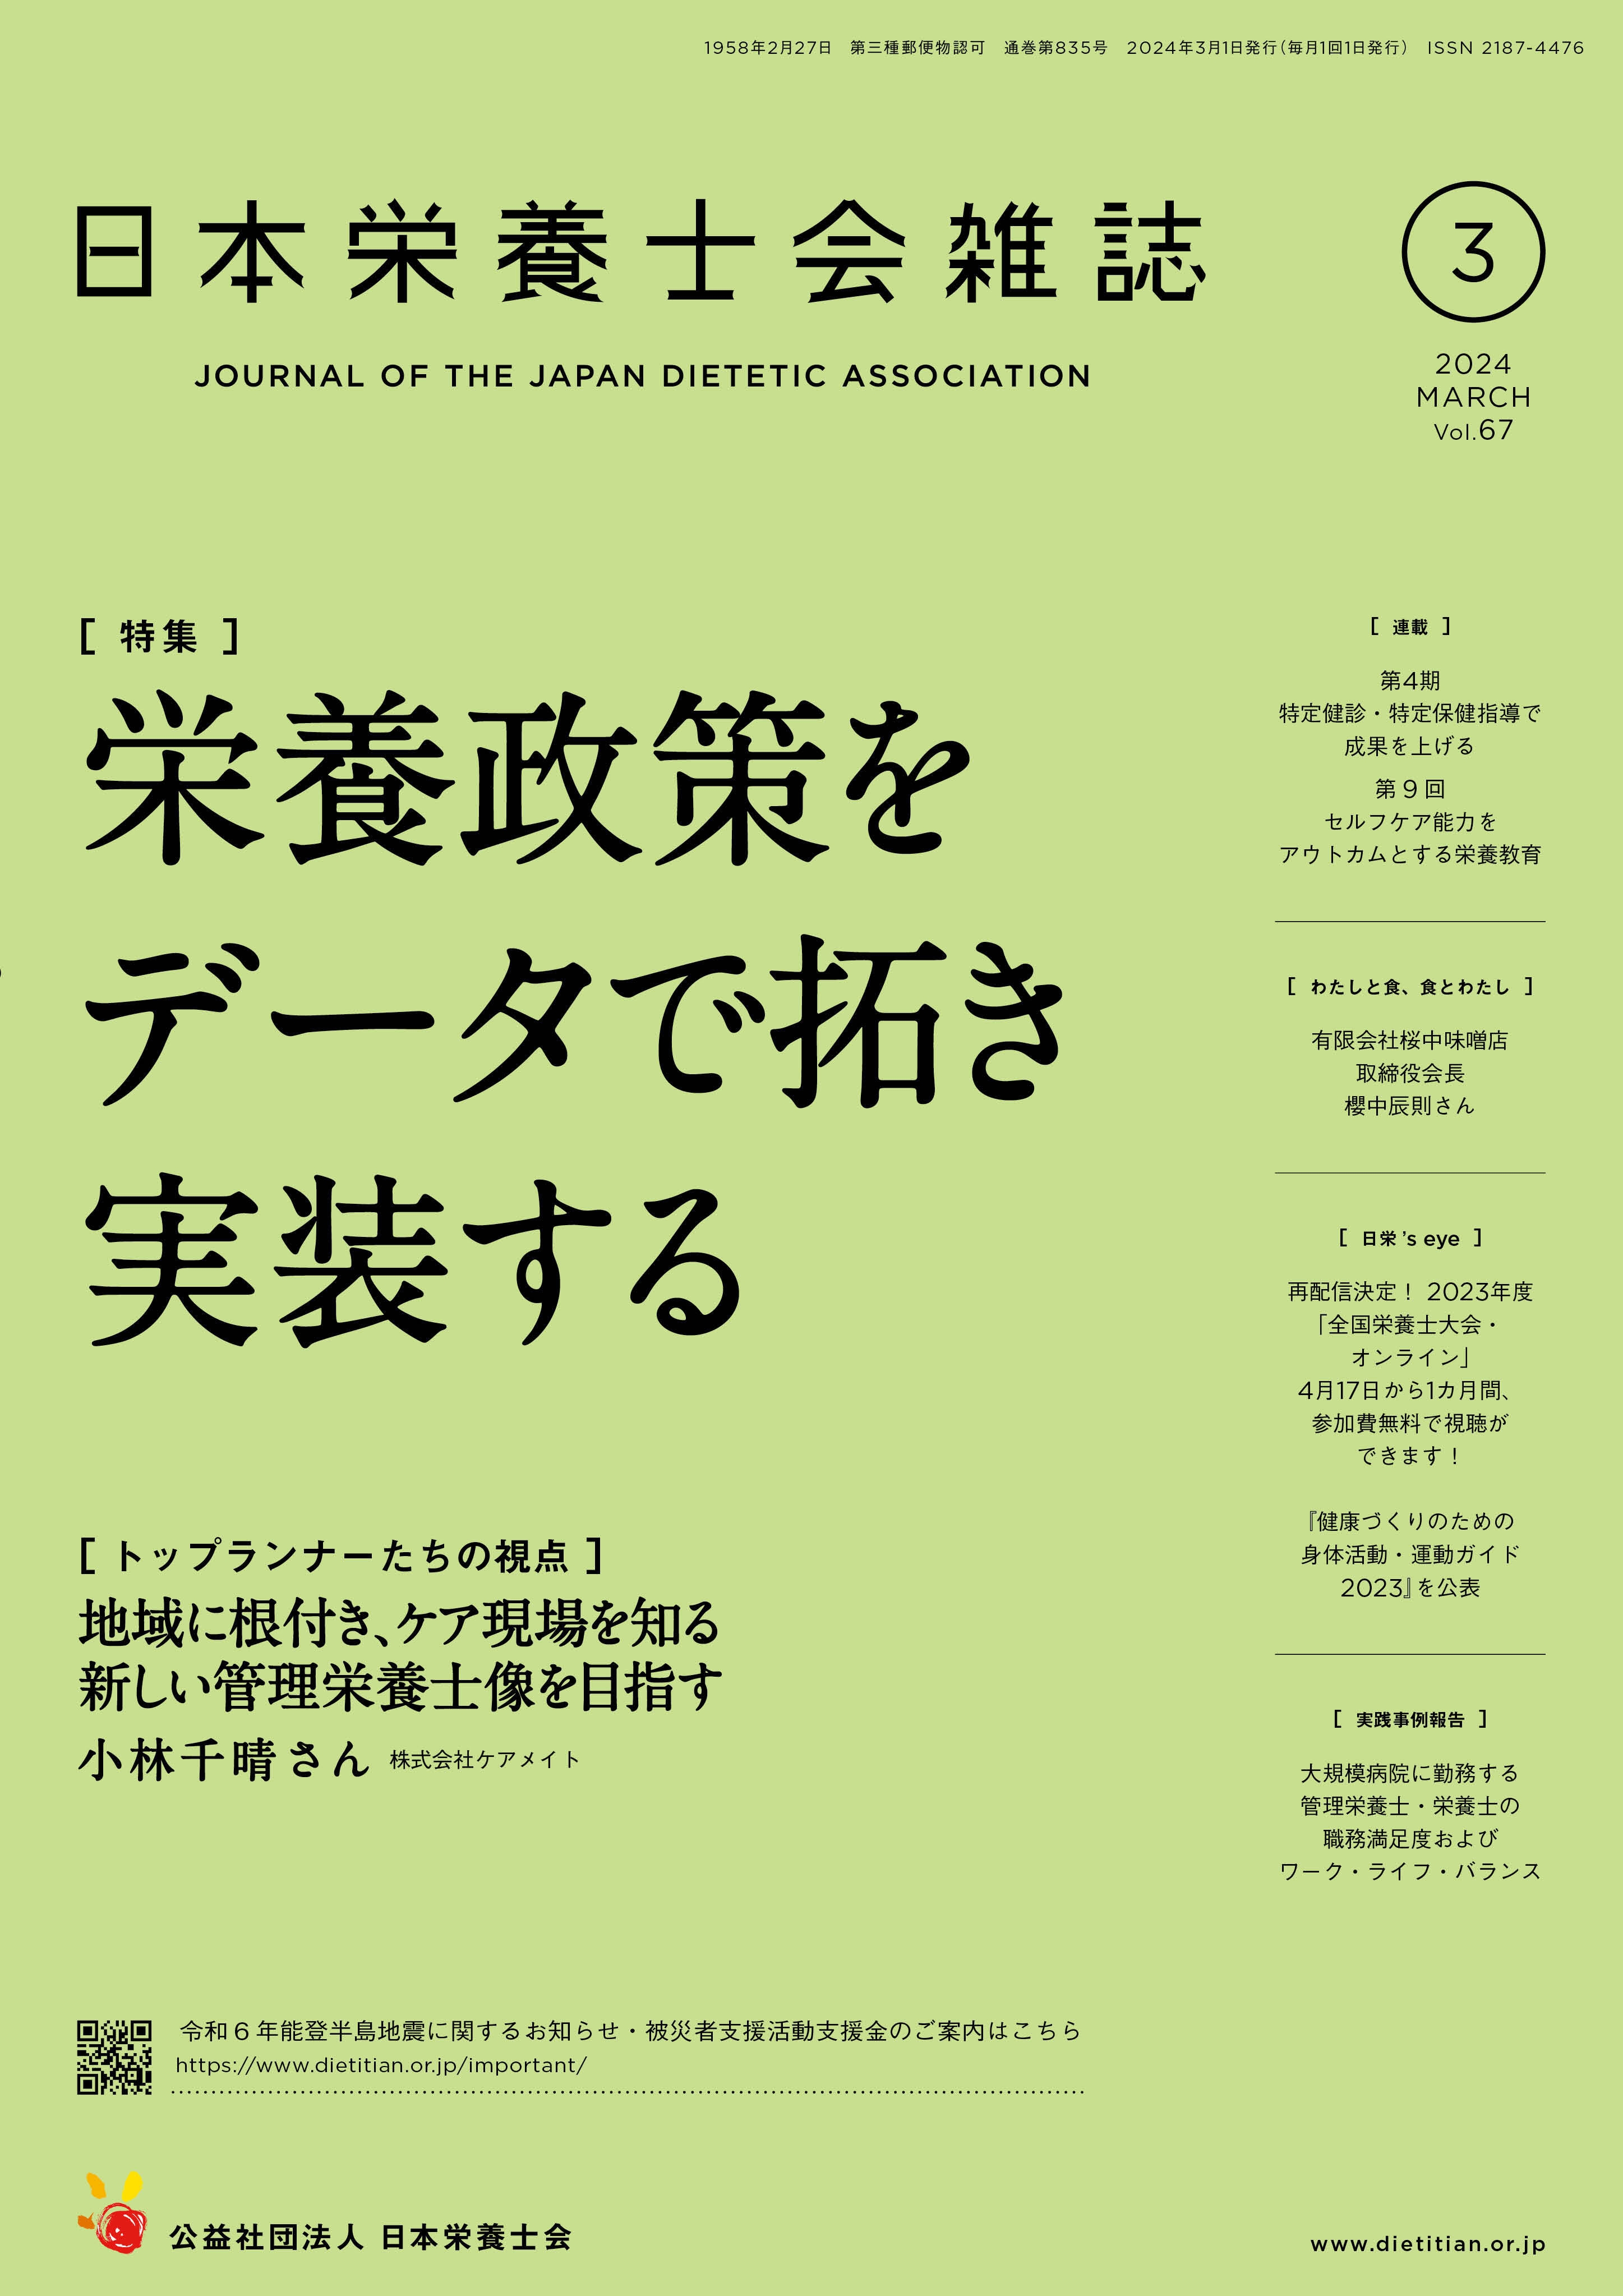 出版物 | 公益社団法人 日本栄養士会